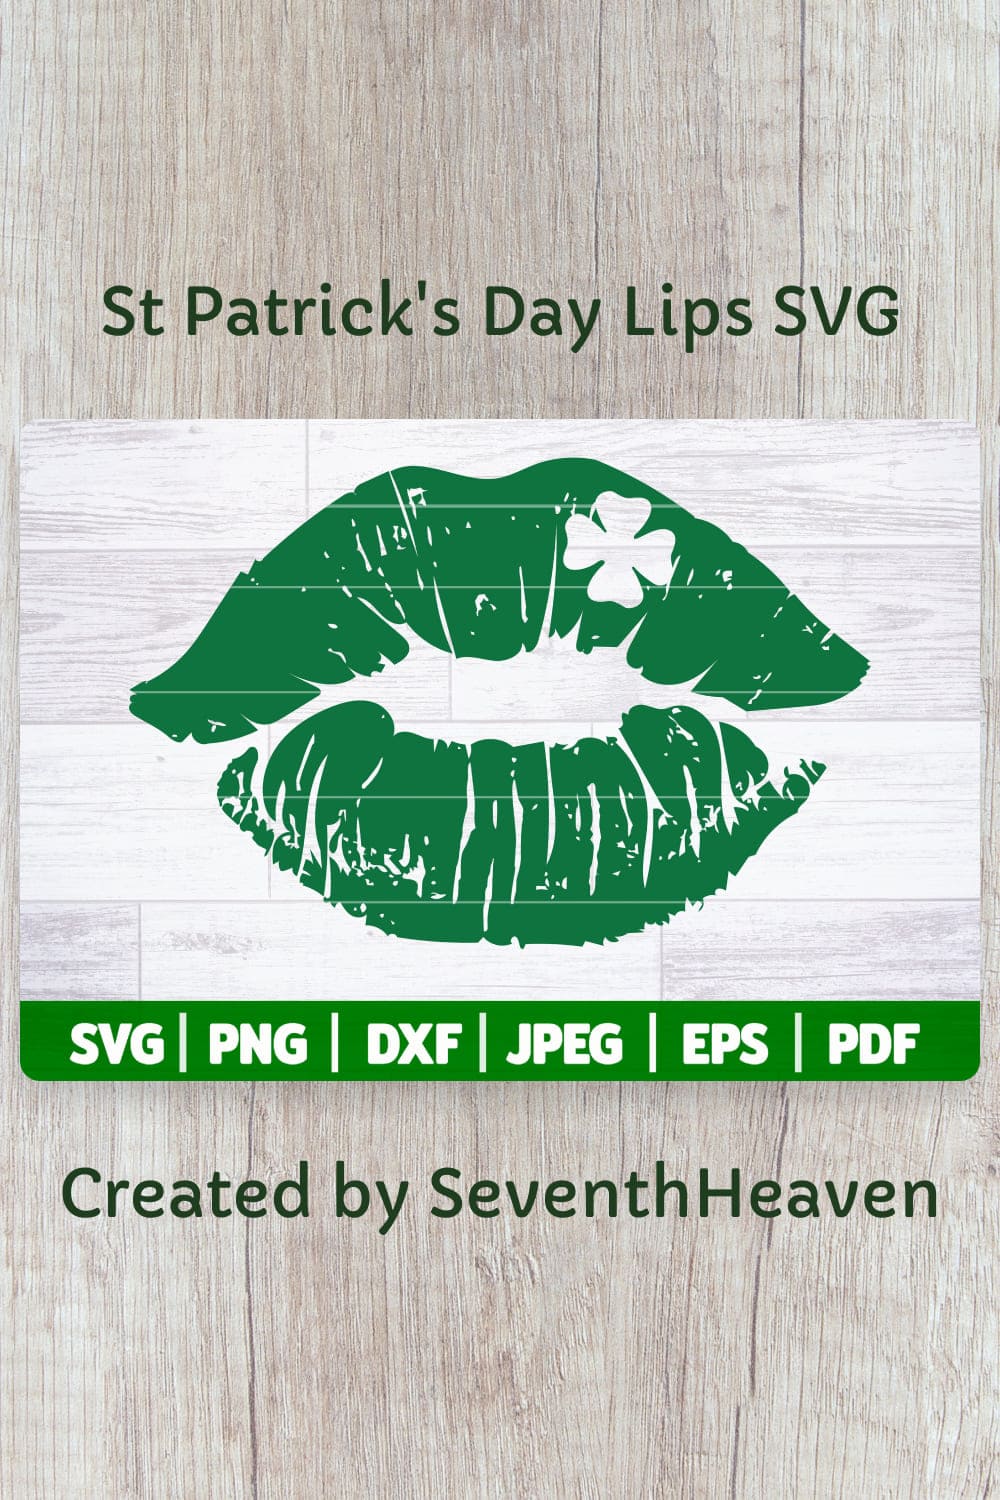 St Patrick's Day Lips SVG, St Paddy's Day SVG Cut File.